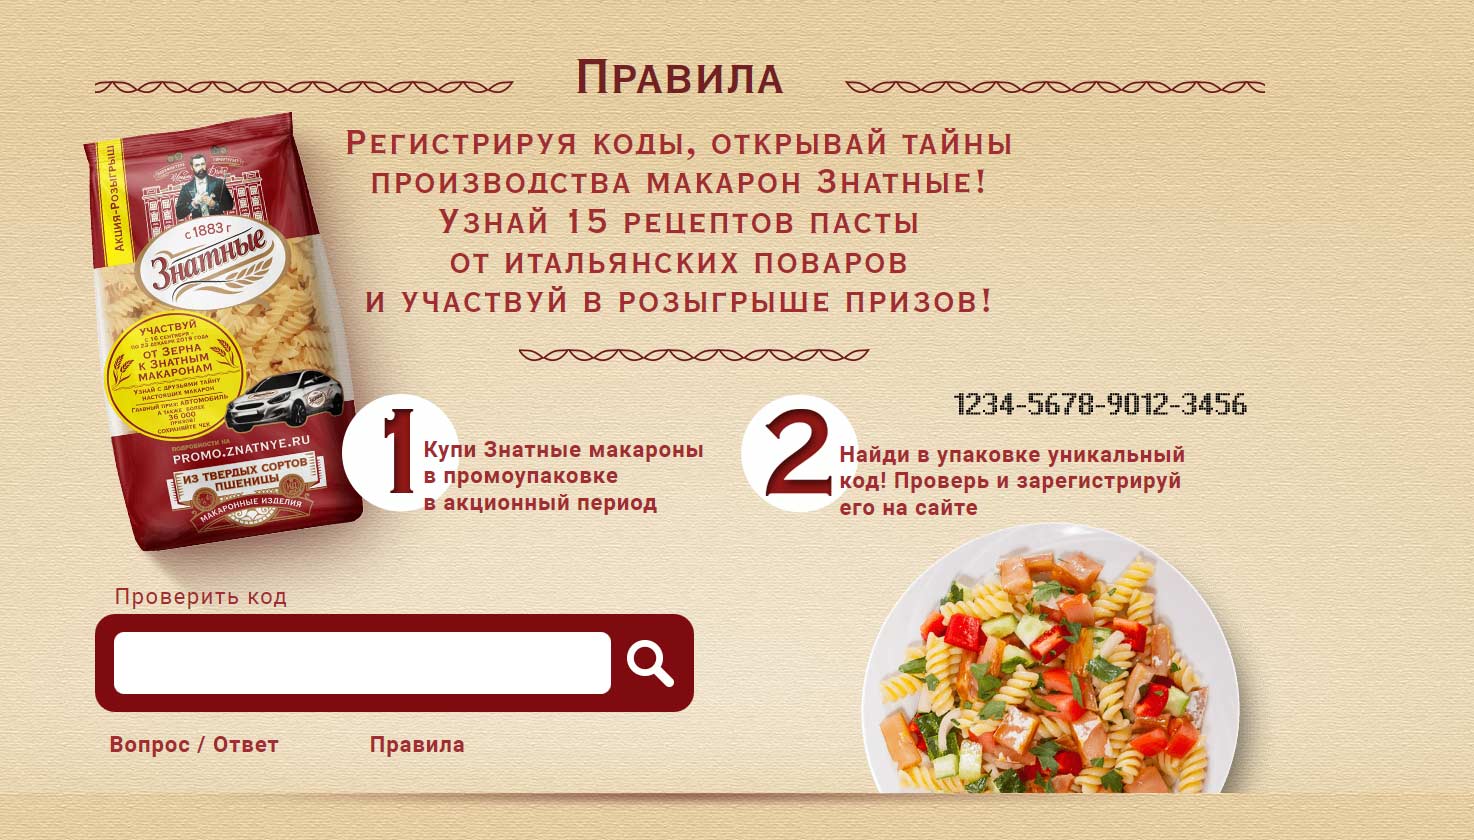 promo.znatnye.ru зарегистрировать чек